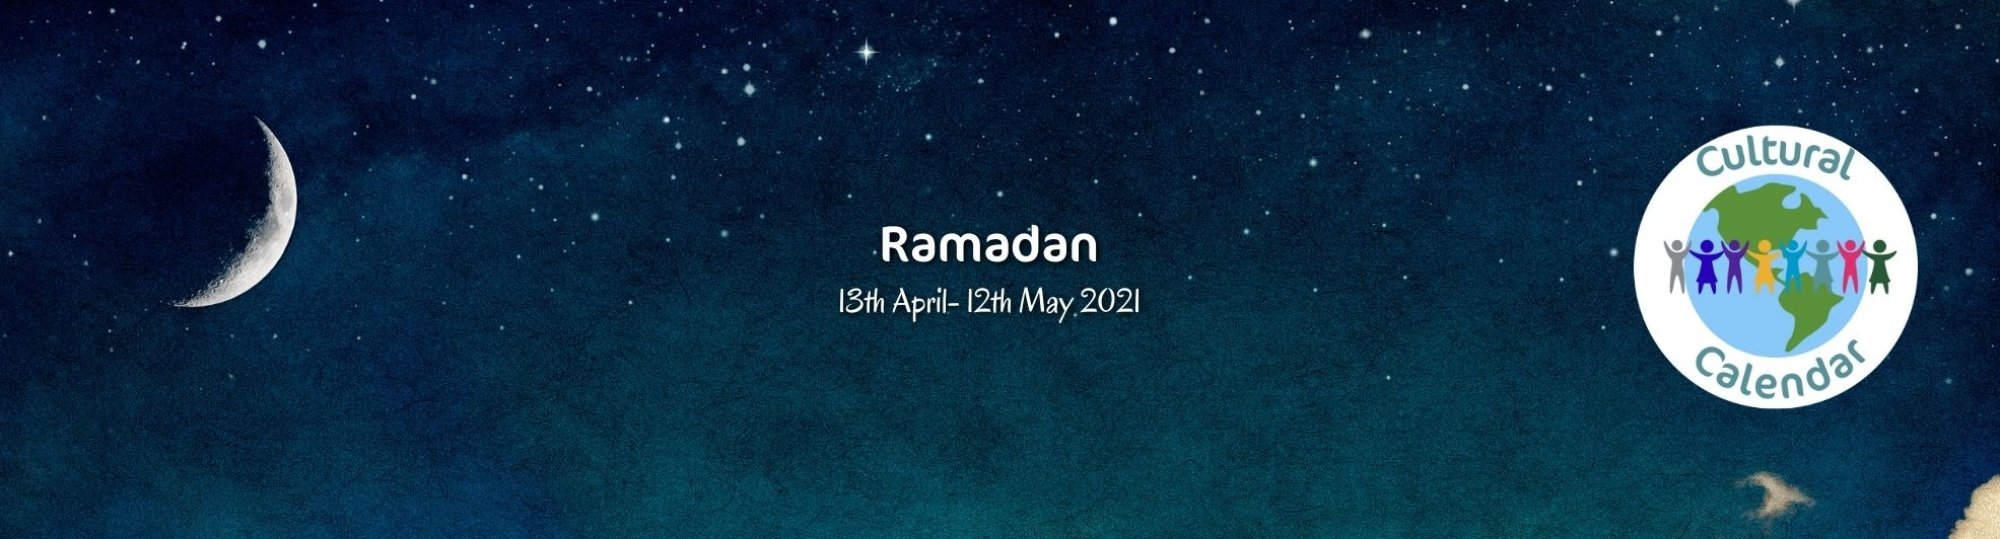 Cultural Calendar: Ramadan